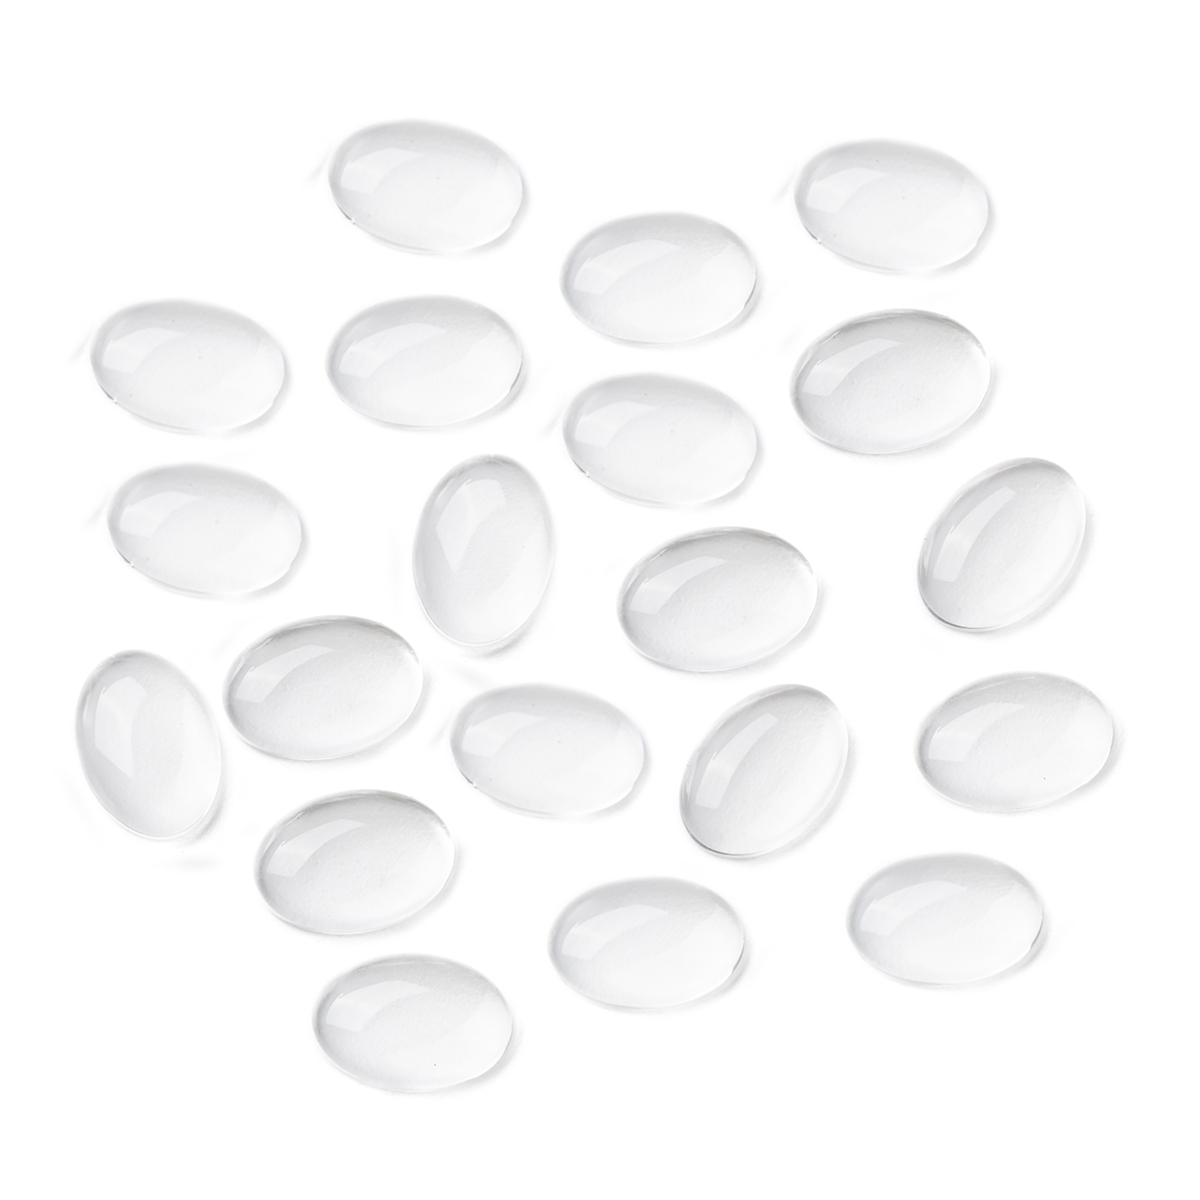 Стеклянный овал. Кабошон стекло овал 10 8 4. Большие овальные прозрачные таблетки. Пластиковые прозрачные каплевидные формы.